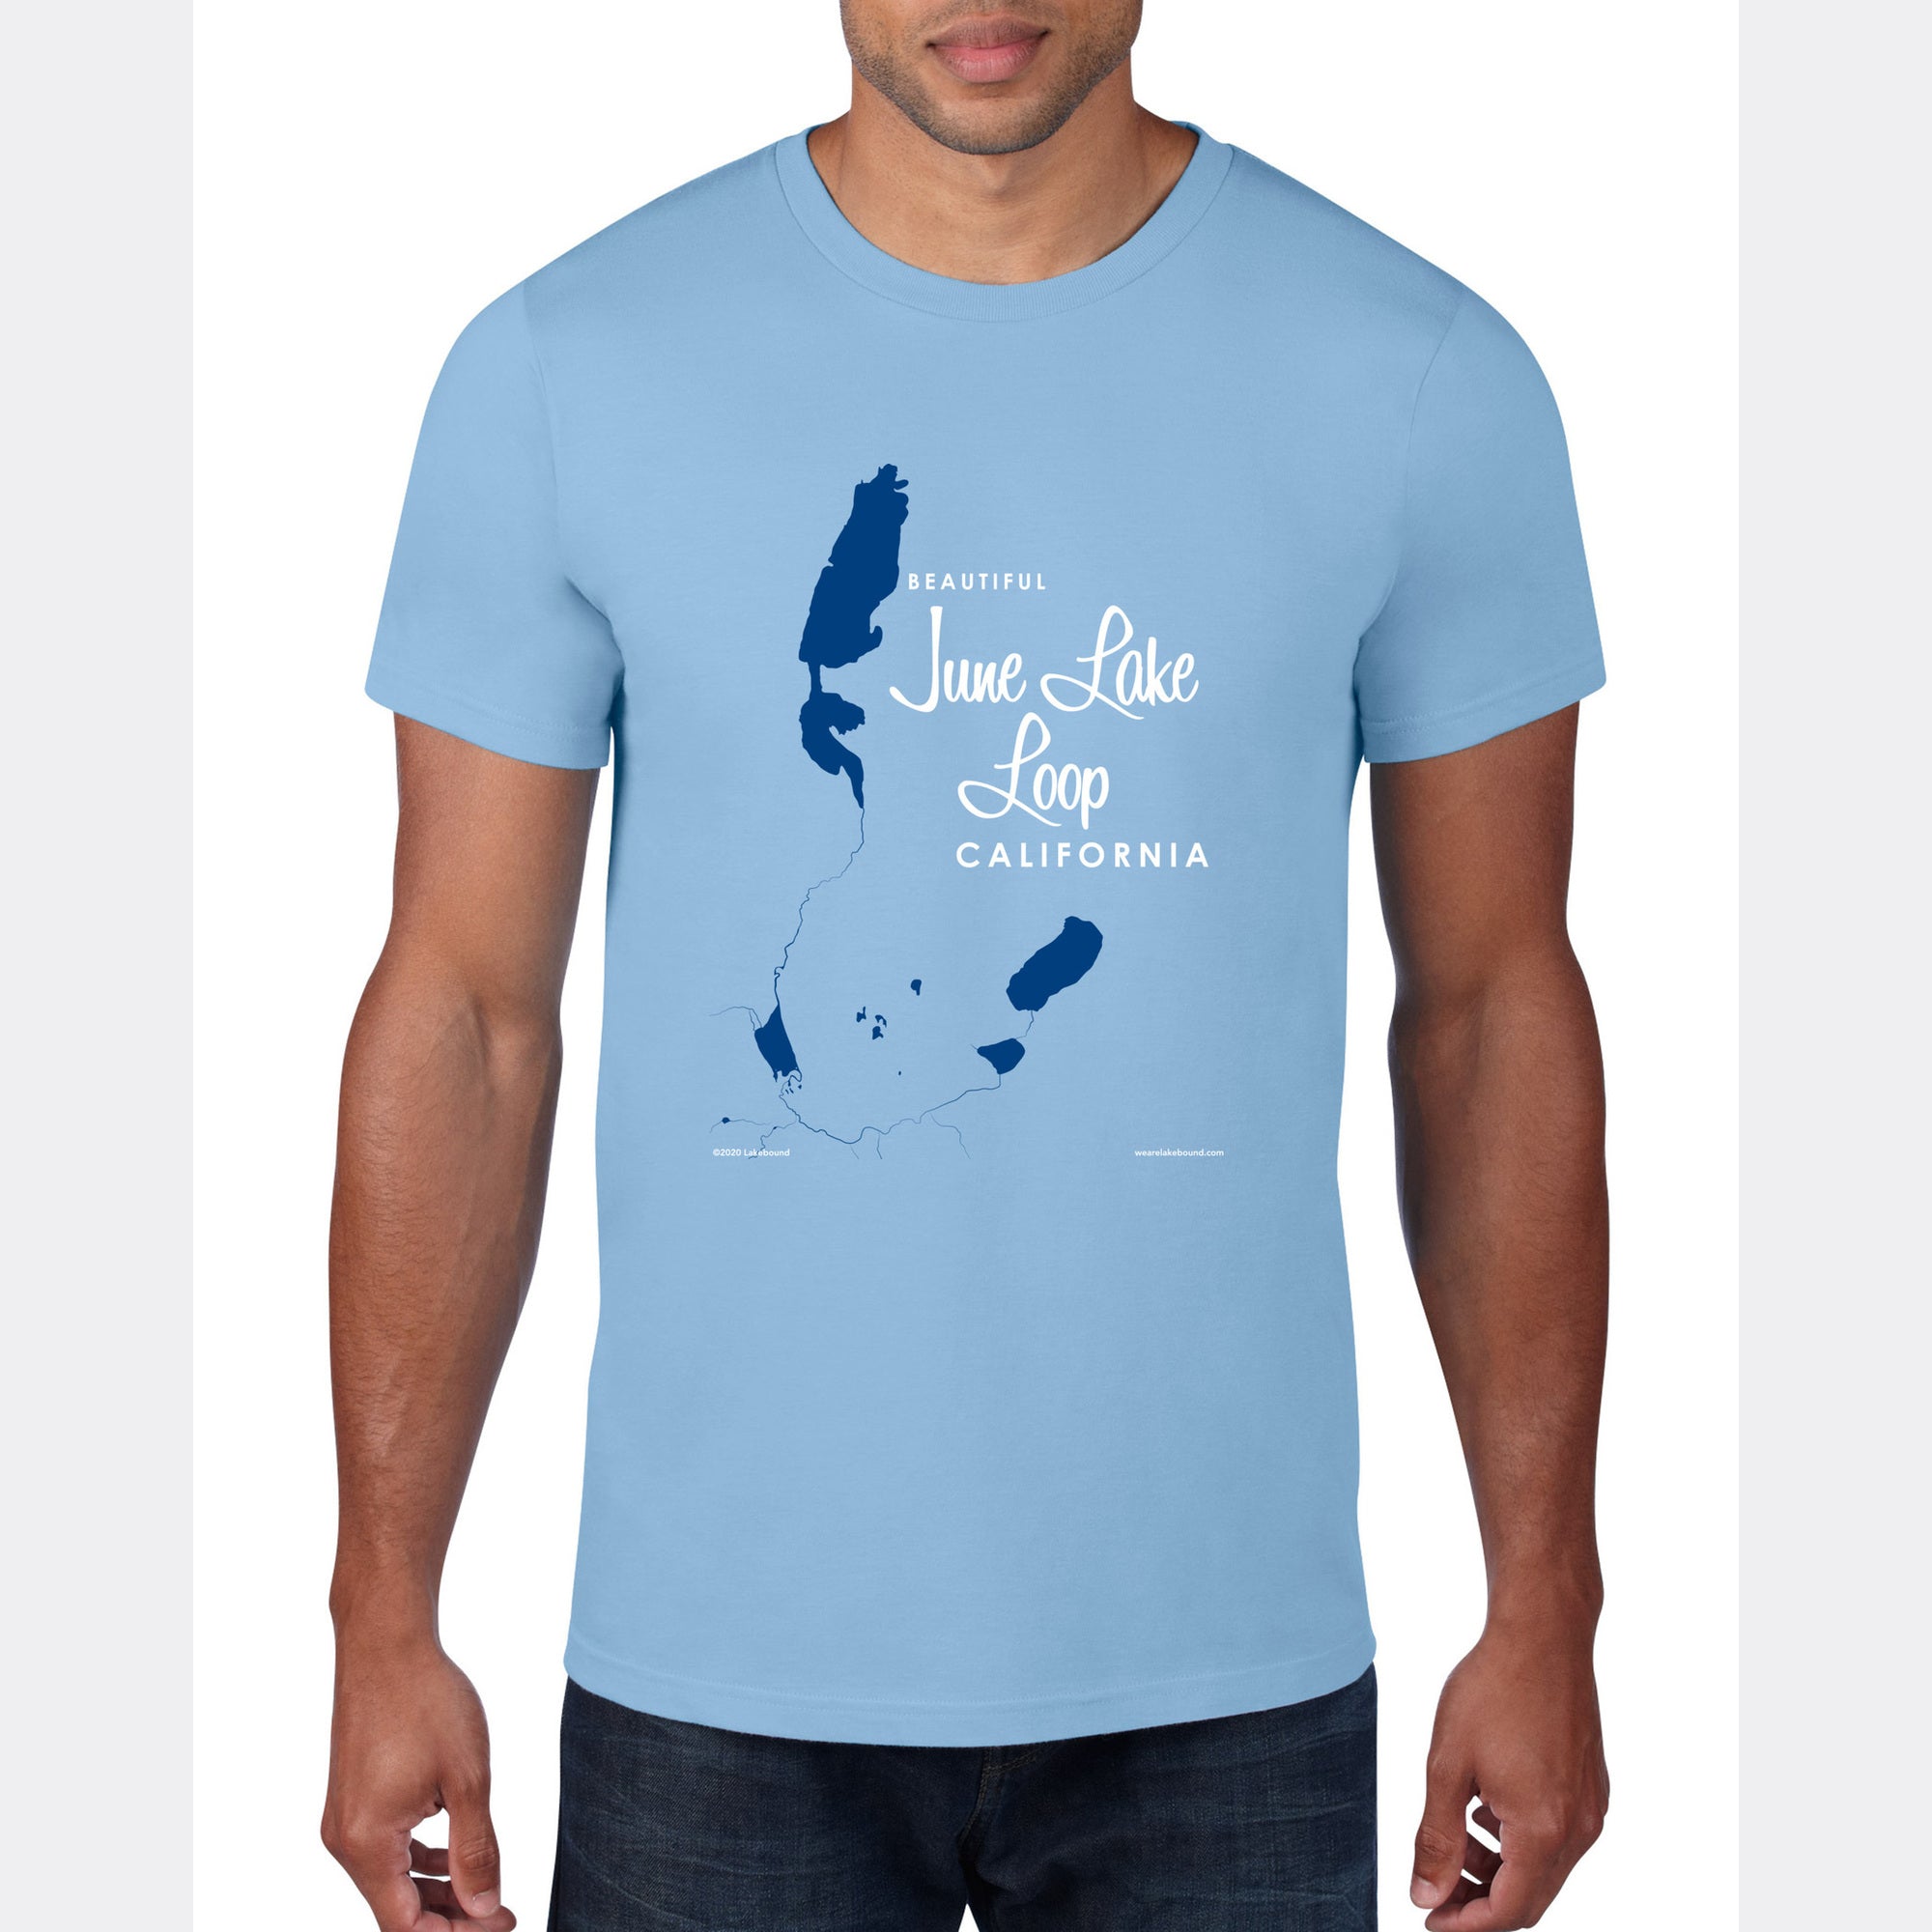 June Lake Loop California, T-Shirt